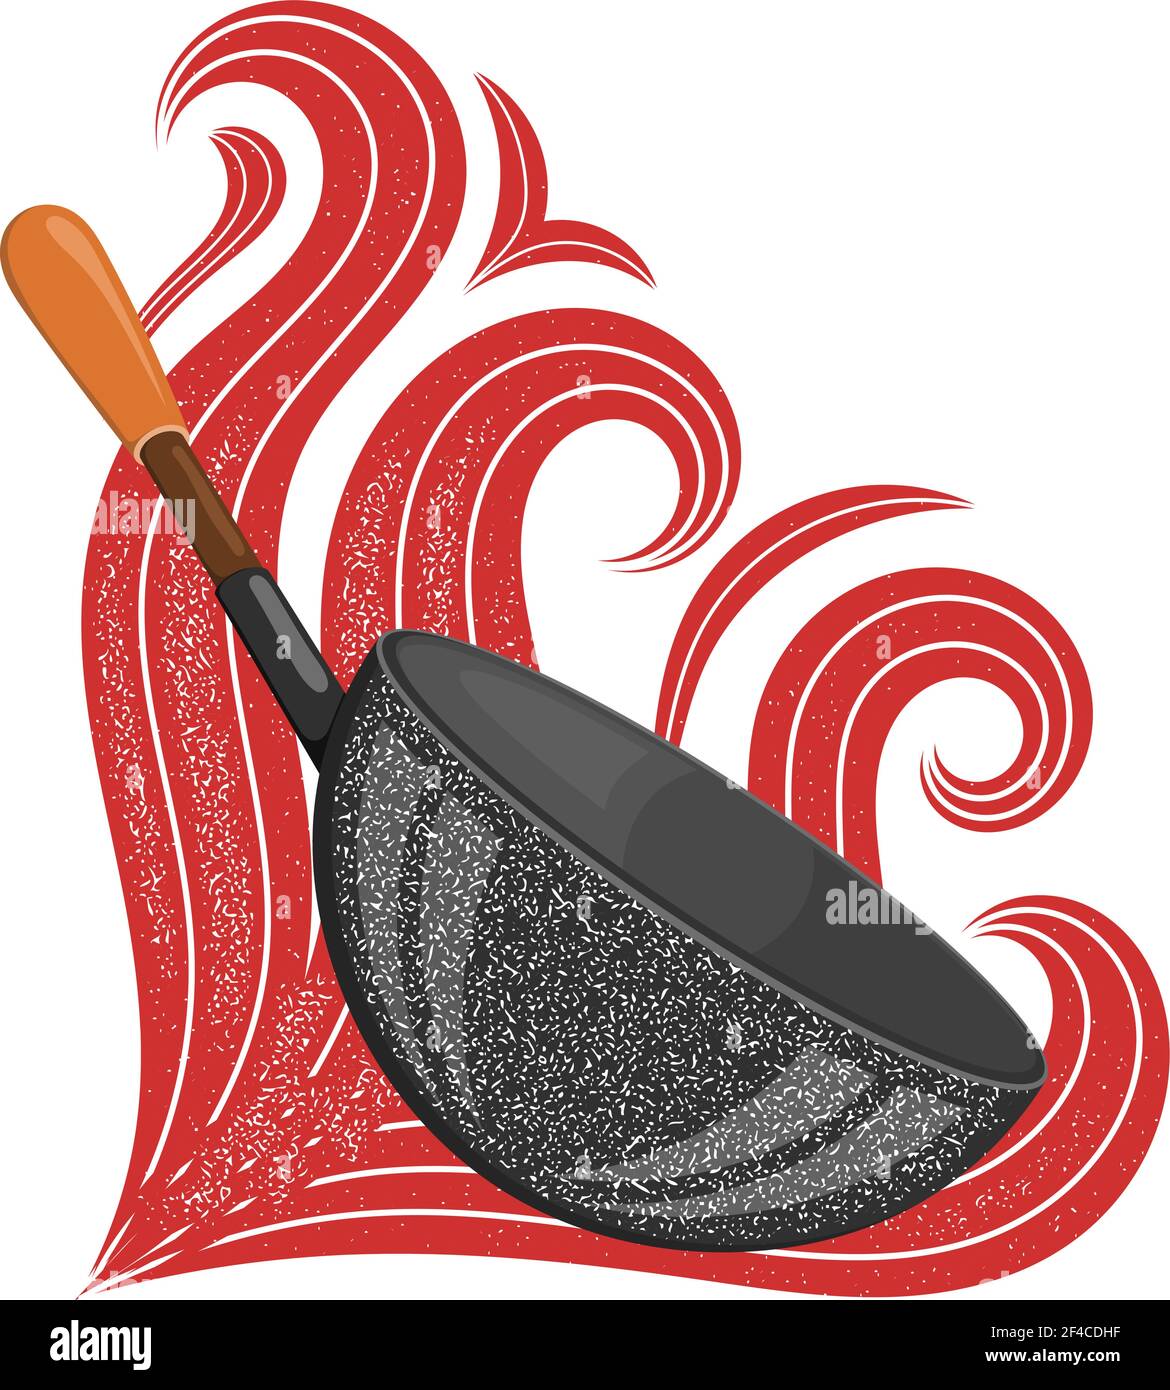 Große schwarze Pfanne mit stilisierten roten Flammen. Vektorgrafik für Aktien Stock Vektor